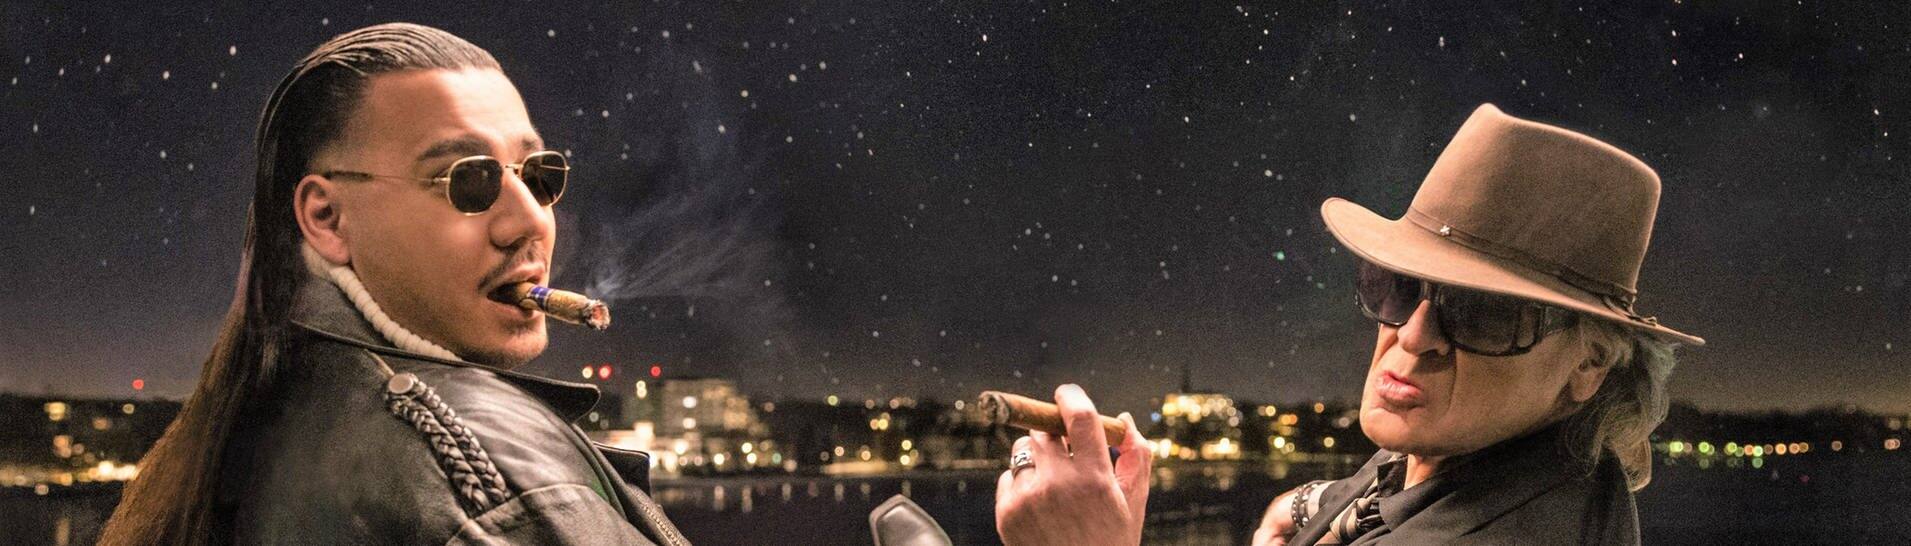 Sänger Udo Lindenberg und Apache 207 schauen Zigarre rauchend in den Nachthimmel, ihr Song „Komet“ ist der erfolgreichste Hit des Jahrtausends (Foto: Tine Acke)